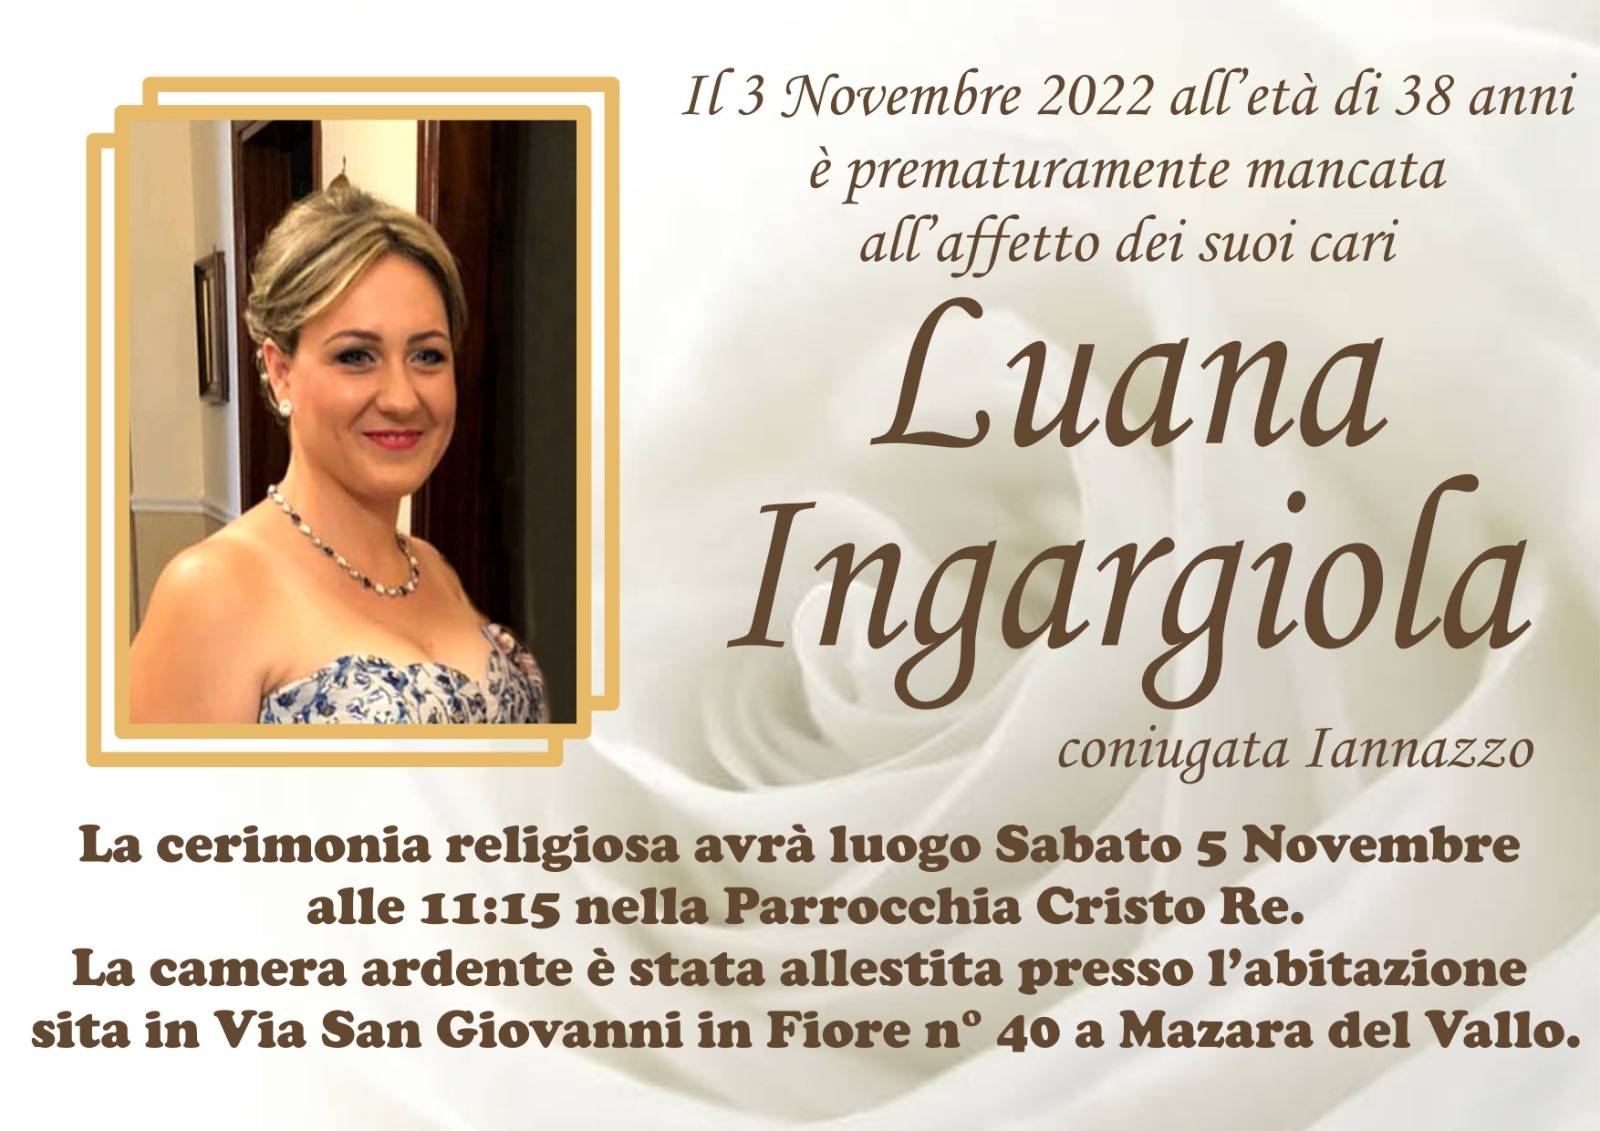 Lorena Luana Ingargiola